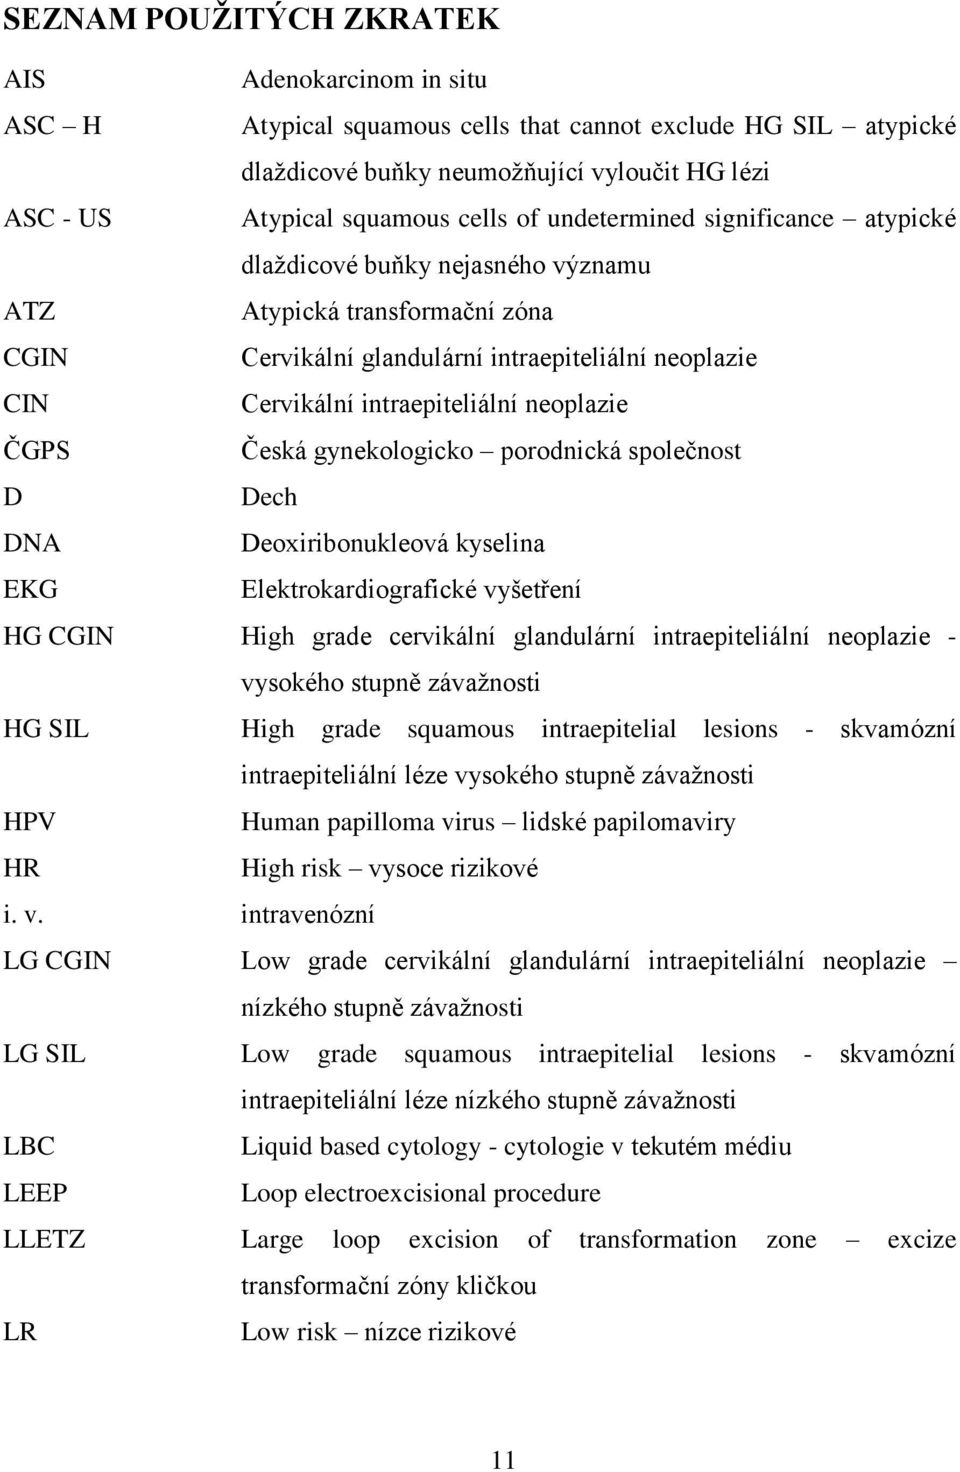 ČGPS Česká gynekologicko porodnická společnost D Dech DNA Deoxiribonukleová kyselina EKG Elektrokardiografické vyšetření HG CGIN High grade cervikální glandulární intraepiteliální neoplazie -